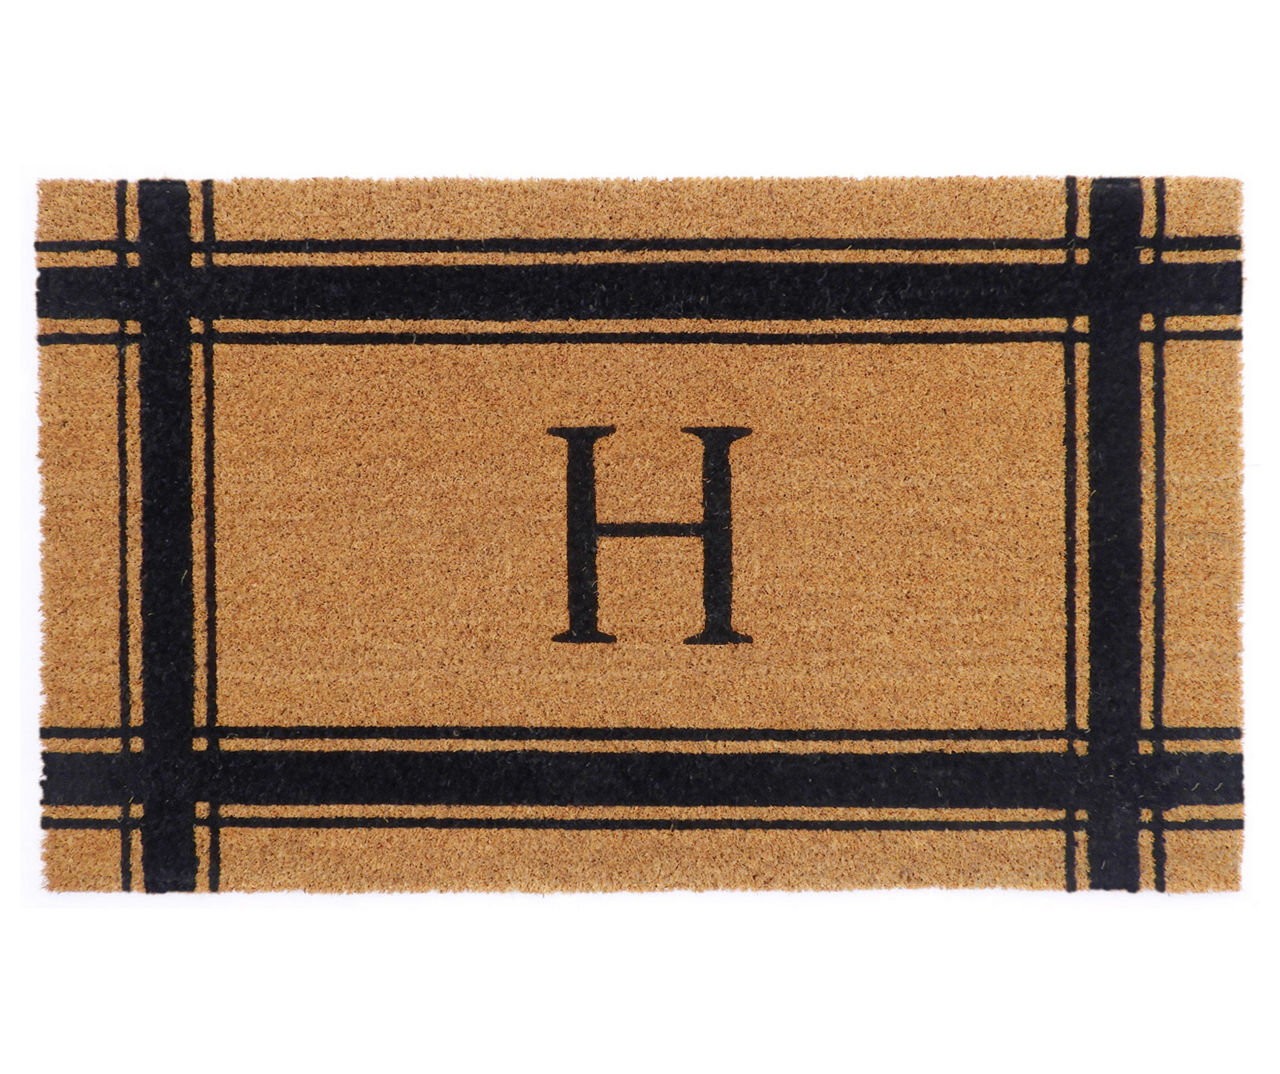 "H" Brown & Black Stripe-Border Monogram Outdoor Doormat, (29" x 17")